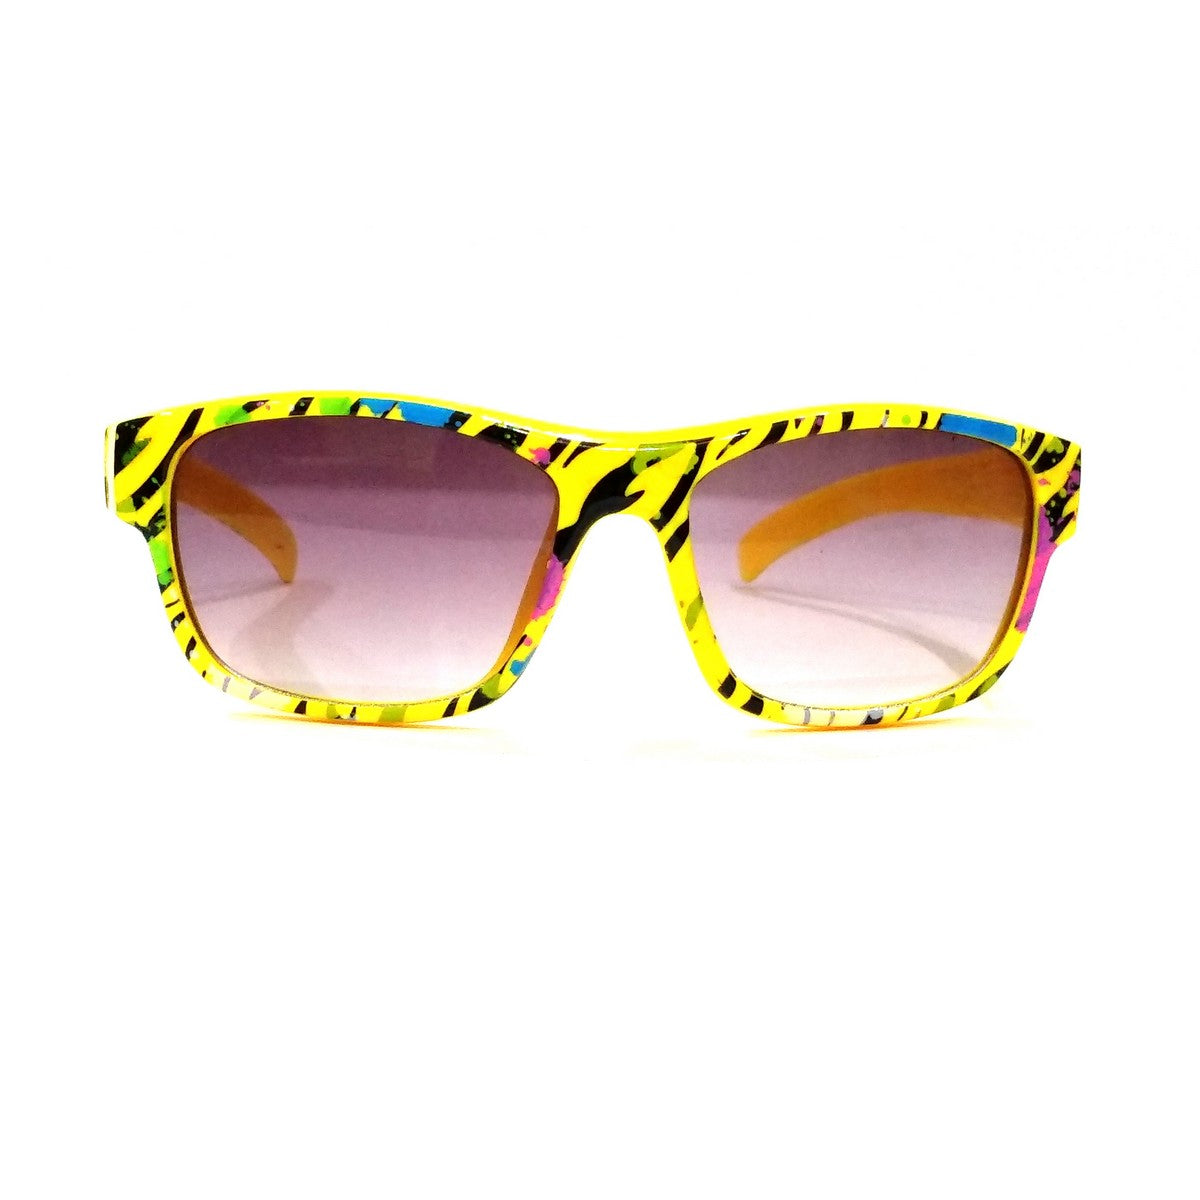 Kids Fashion Sunglasses TKS005Yellow